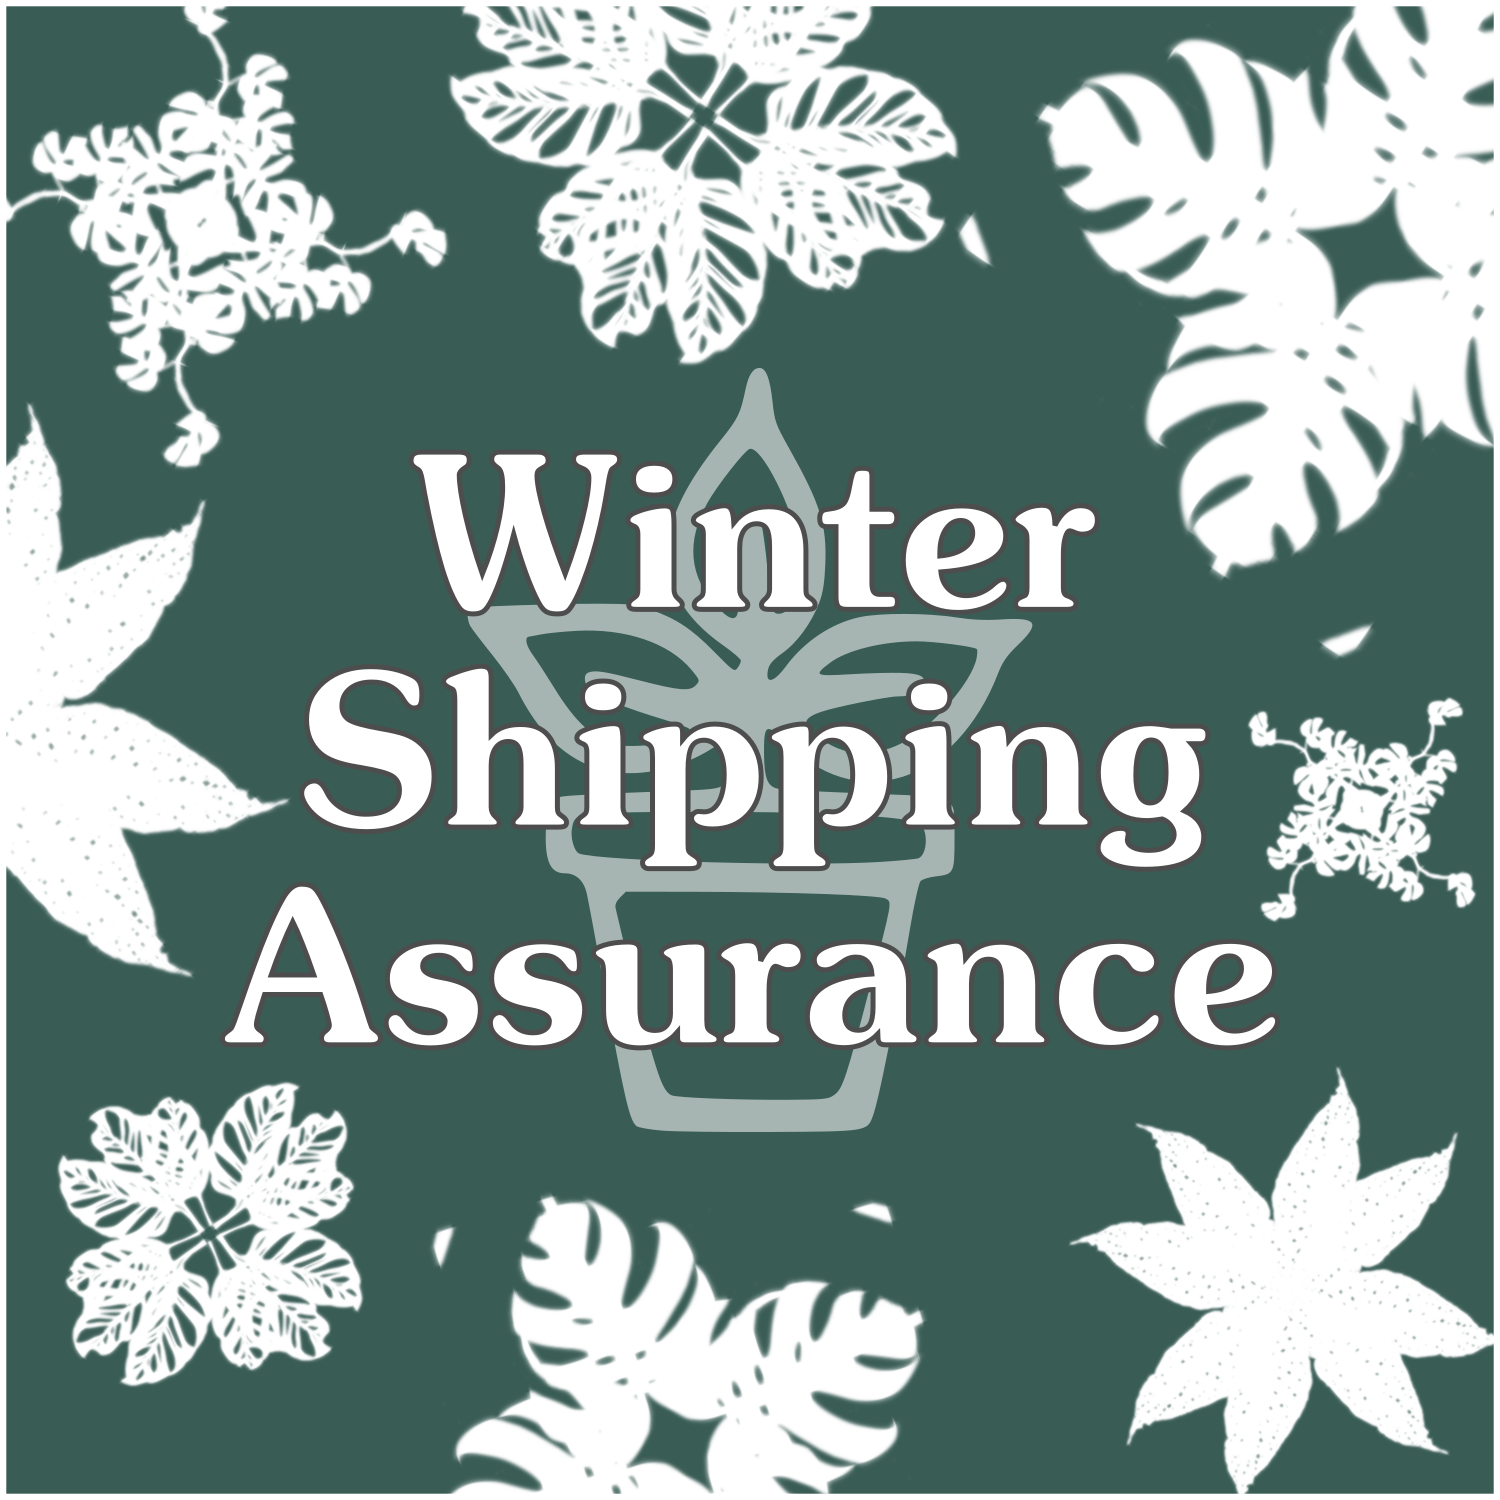 Winter Shipping Assurance